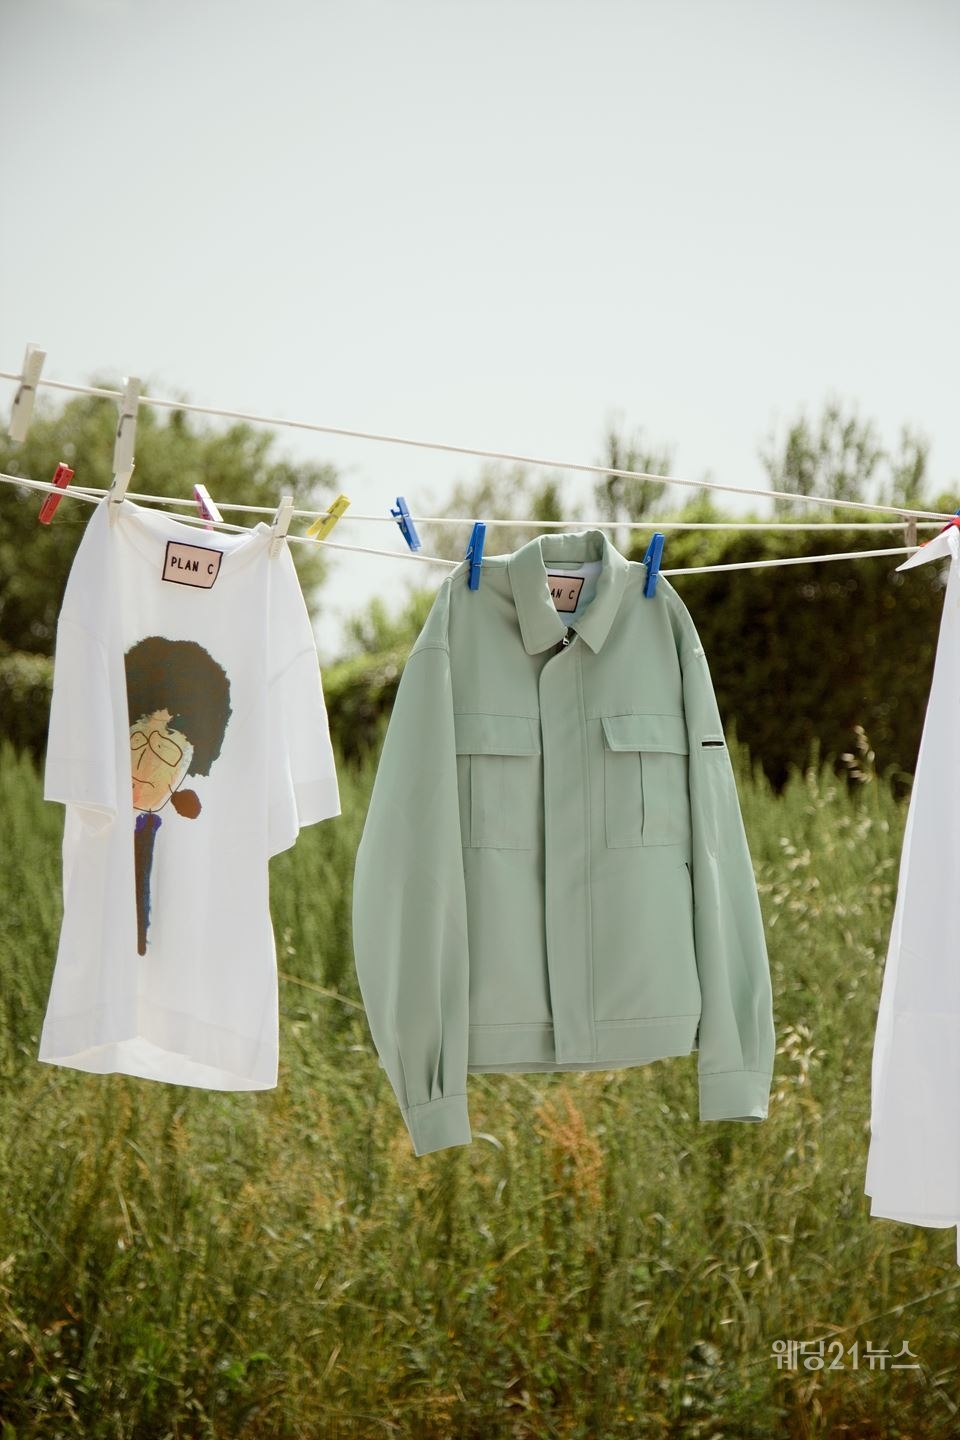 사진 : 밀라노 베이스의 브랜드 플랜씨(PLAN C)가 ‘필리’ 드로잉이 더해진 티셔츠와 민트 컬러 점퍼